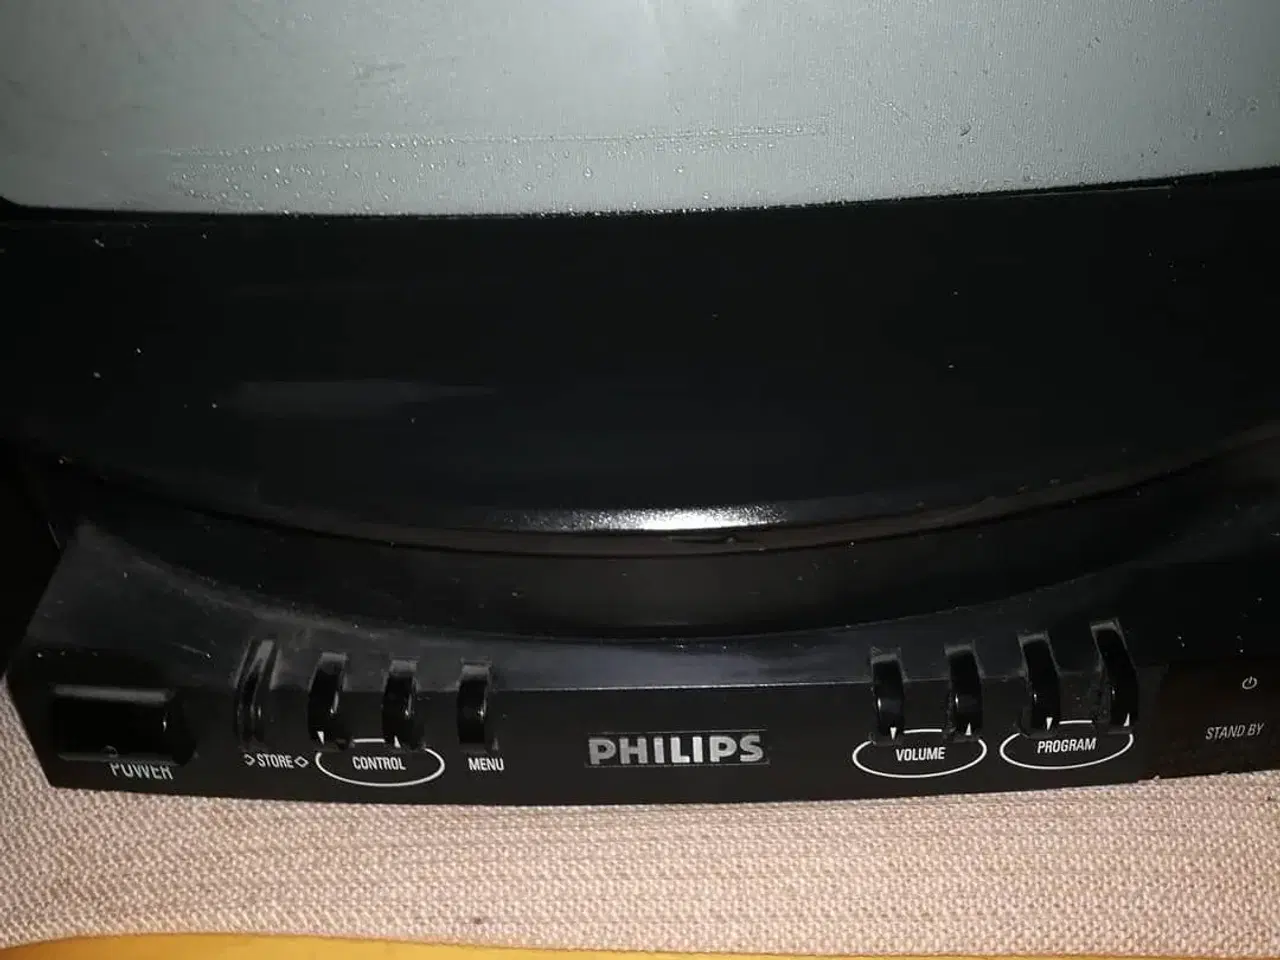 Billede 3 - TV: Philips Discoverer 1973